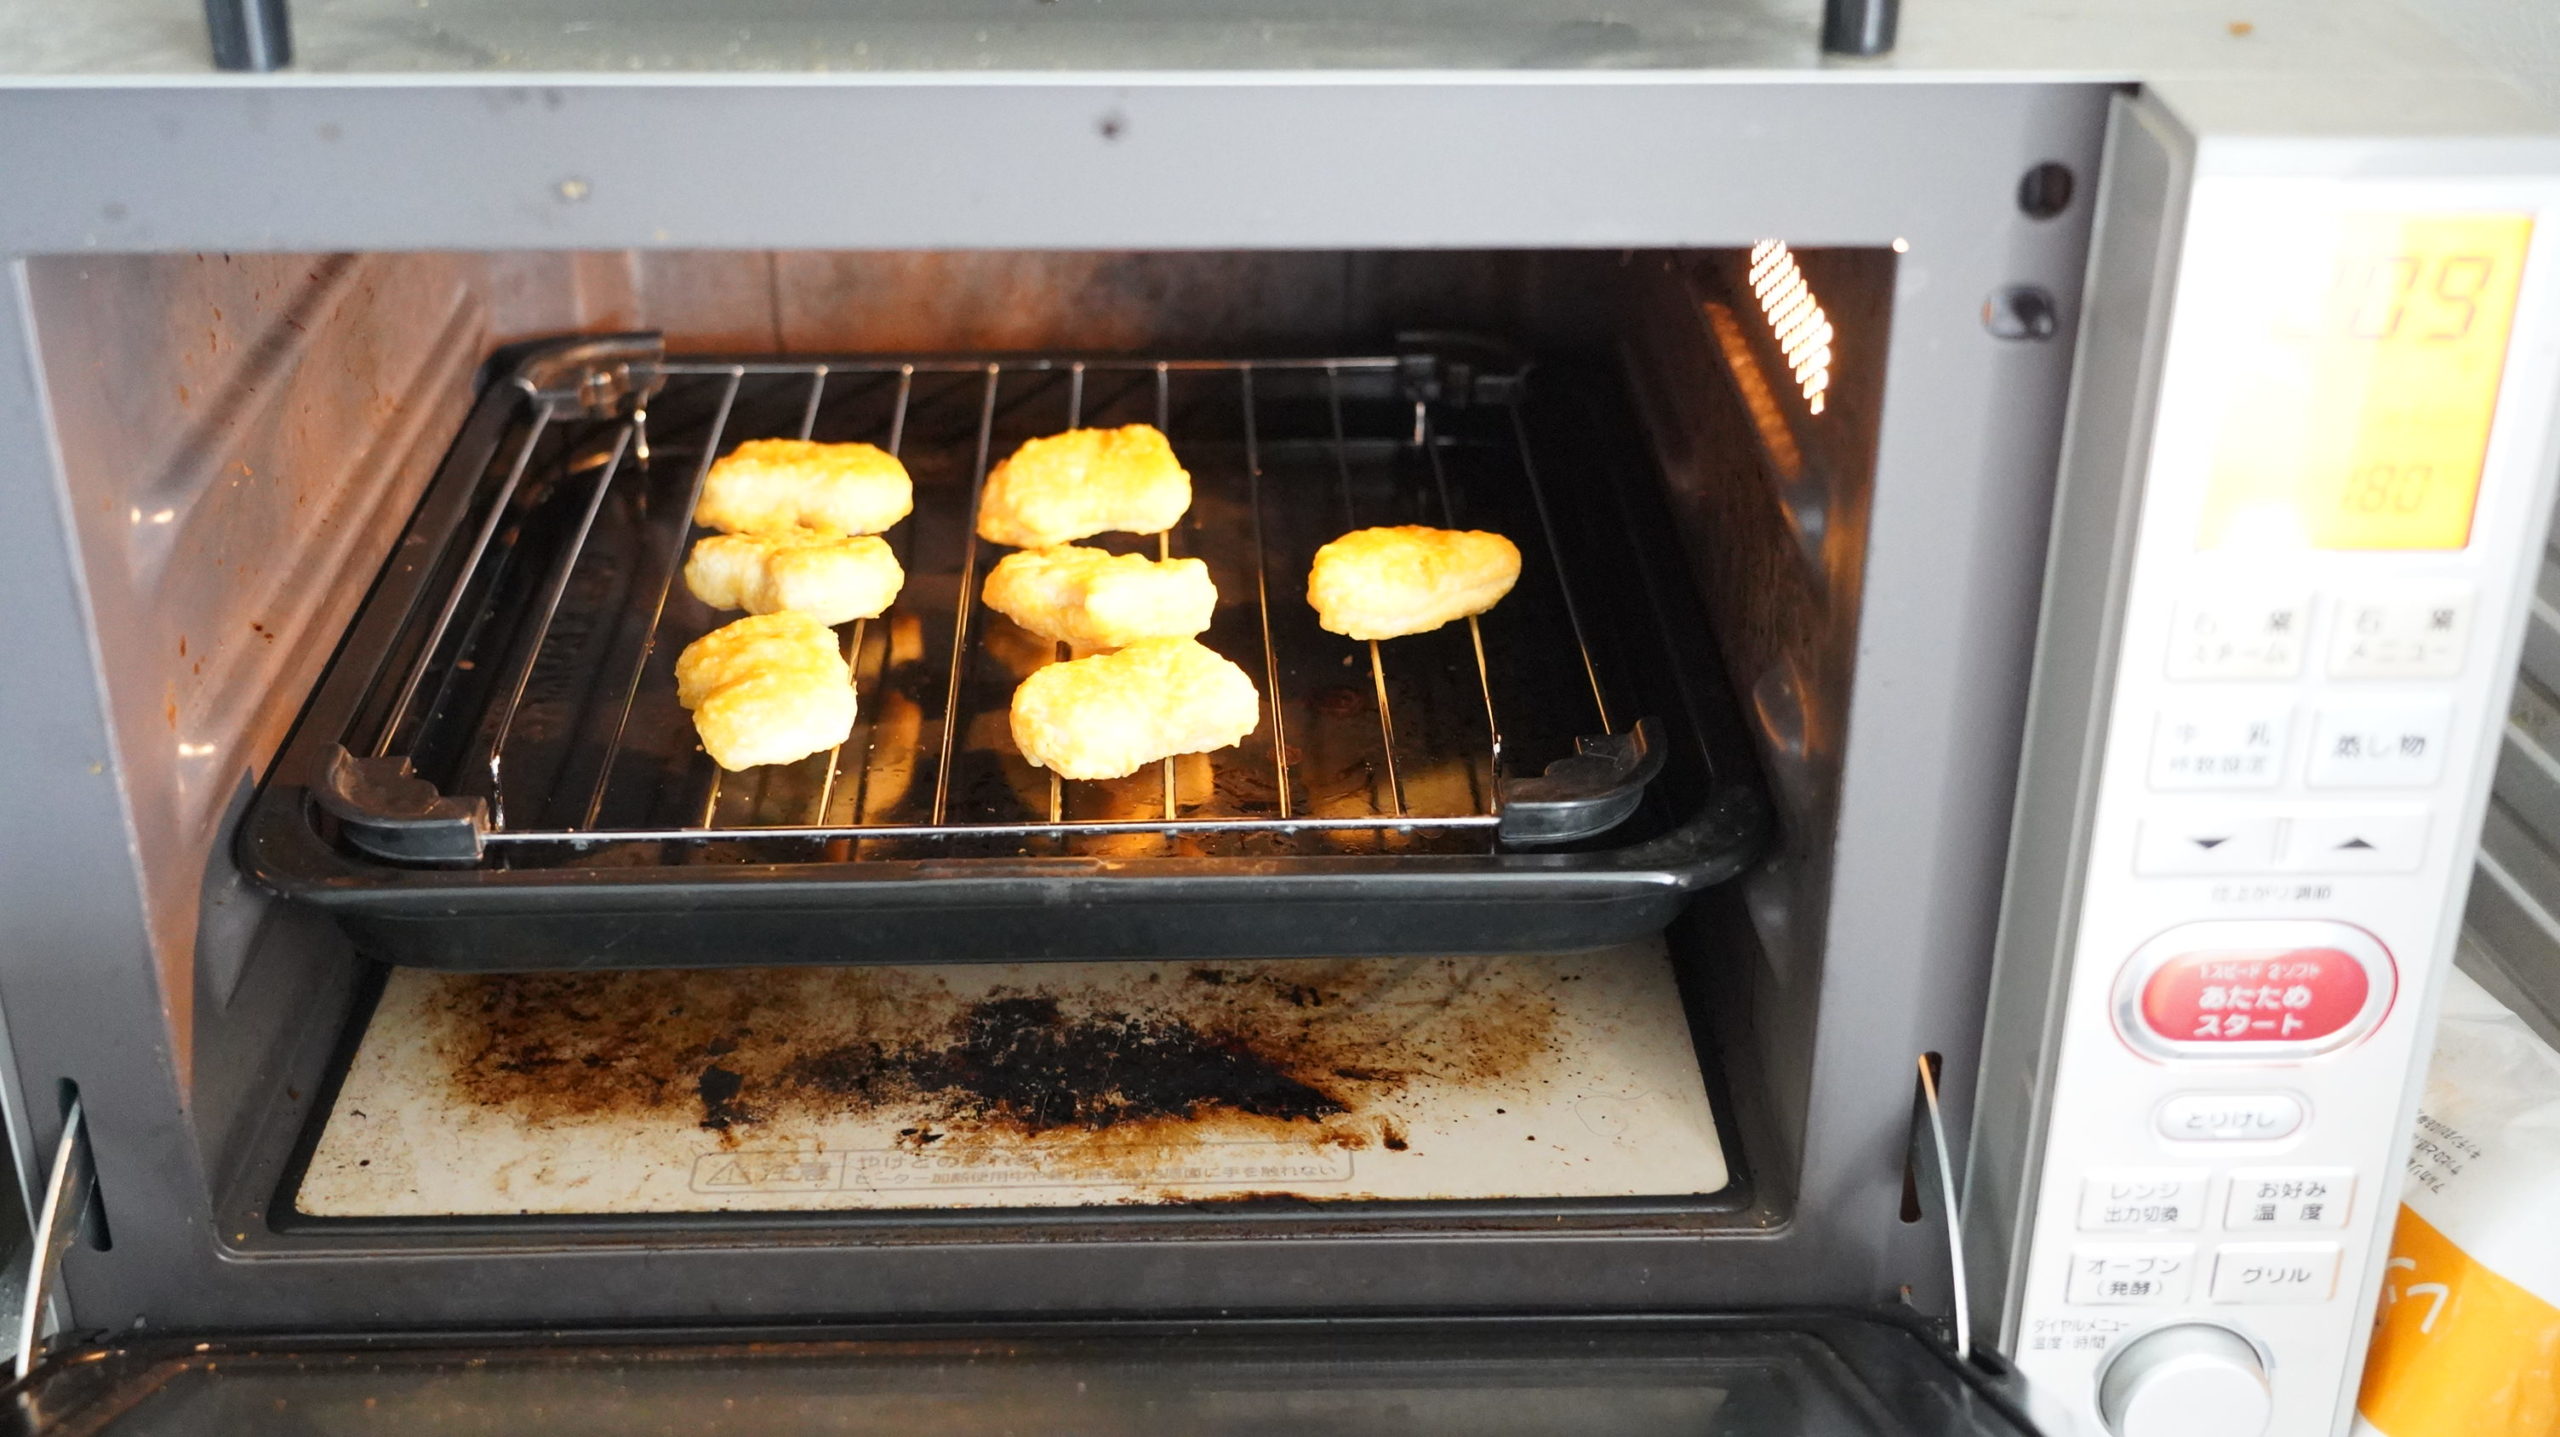 コストコの冷凍食品「CP チキンナゲット」をオーブンで調理している写真